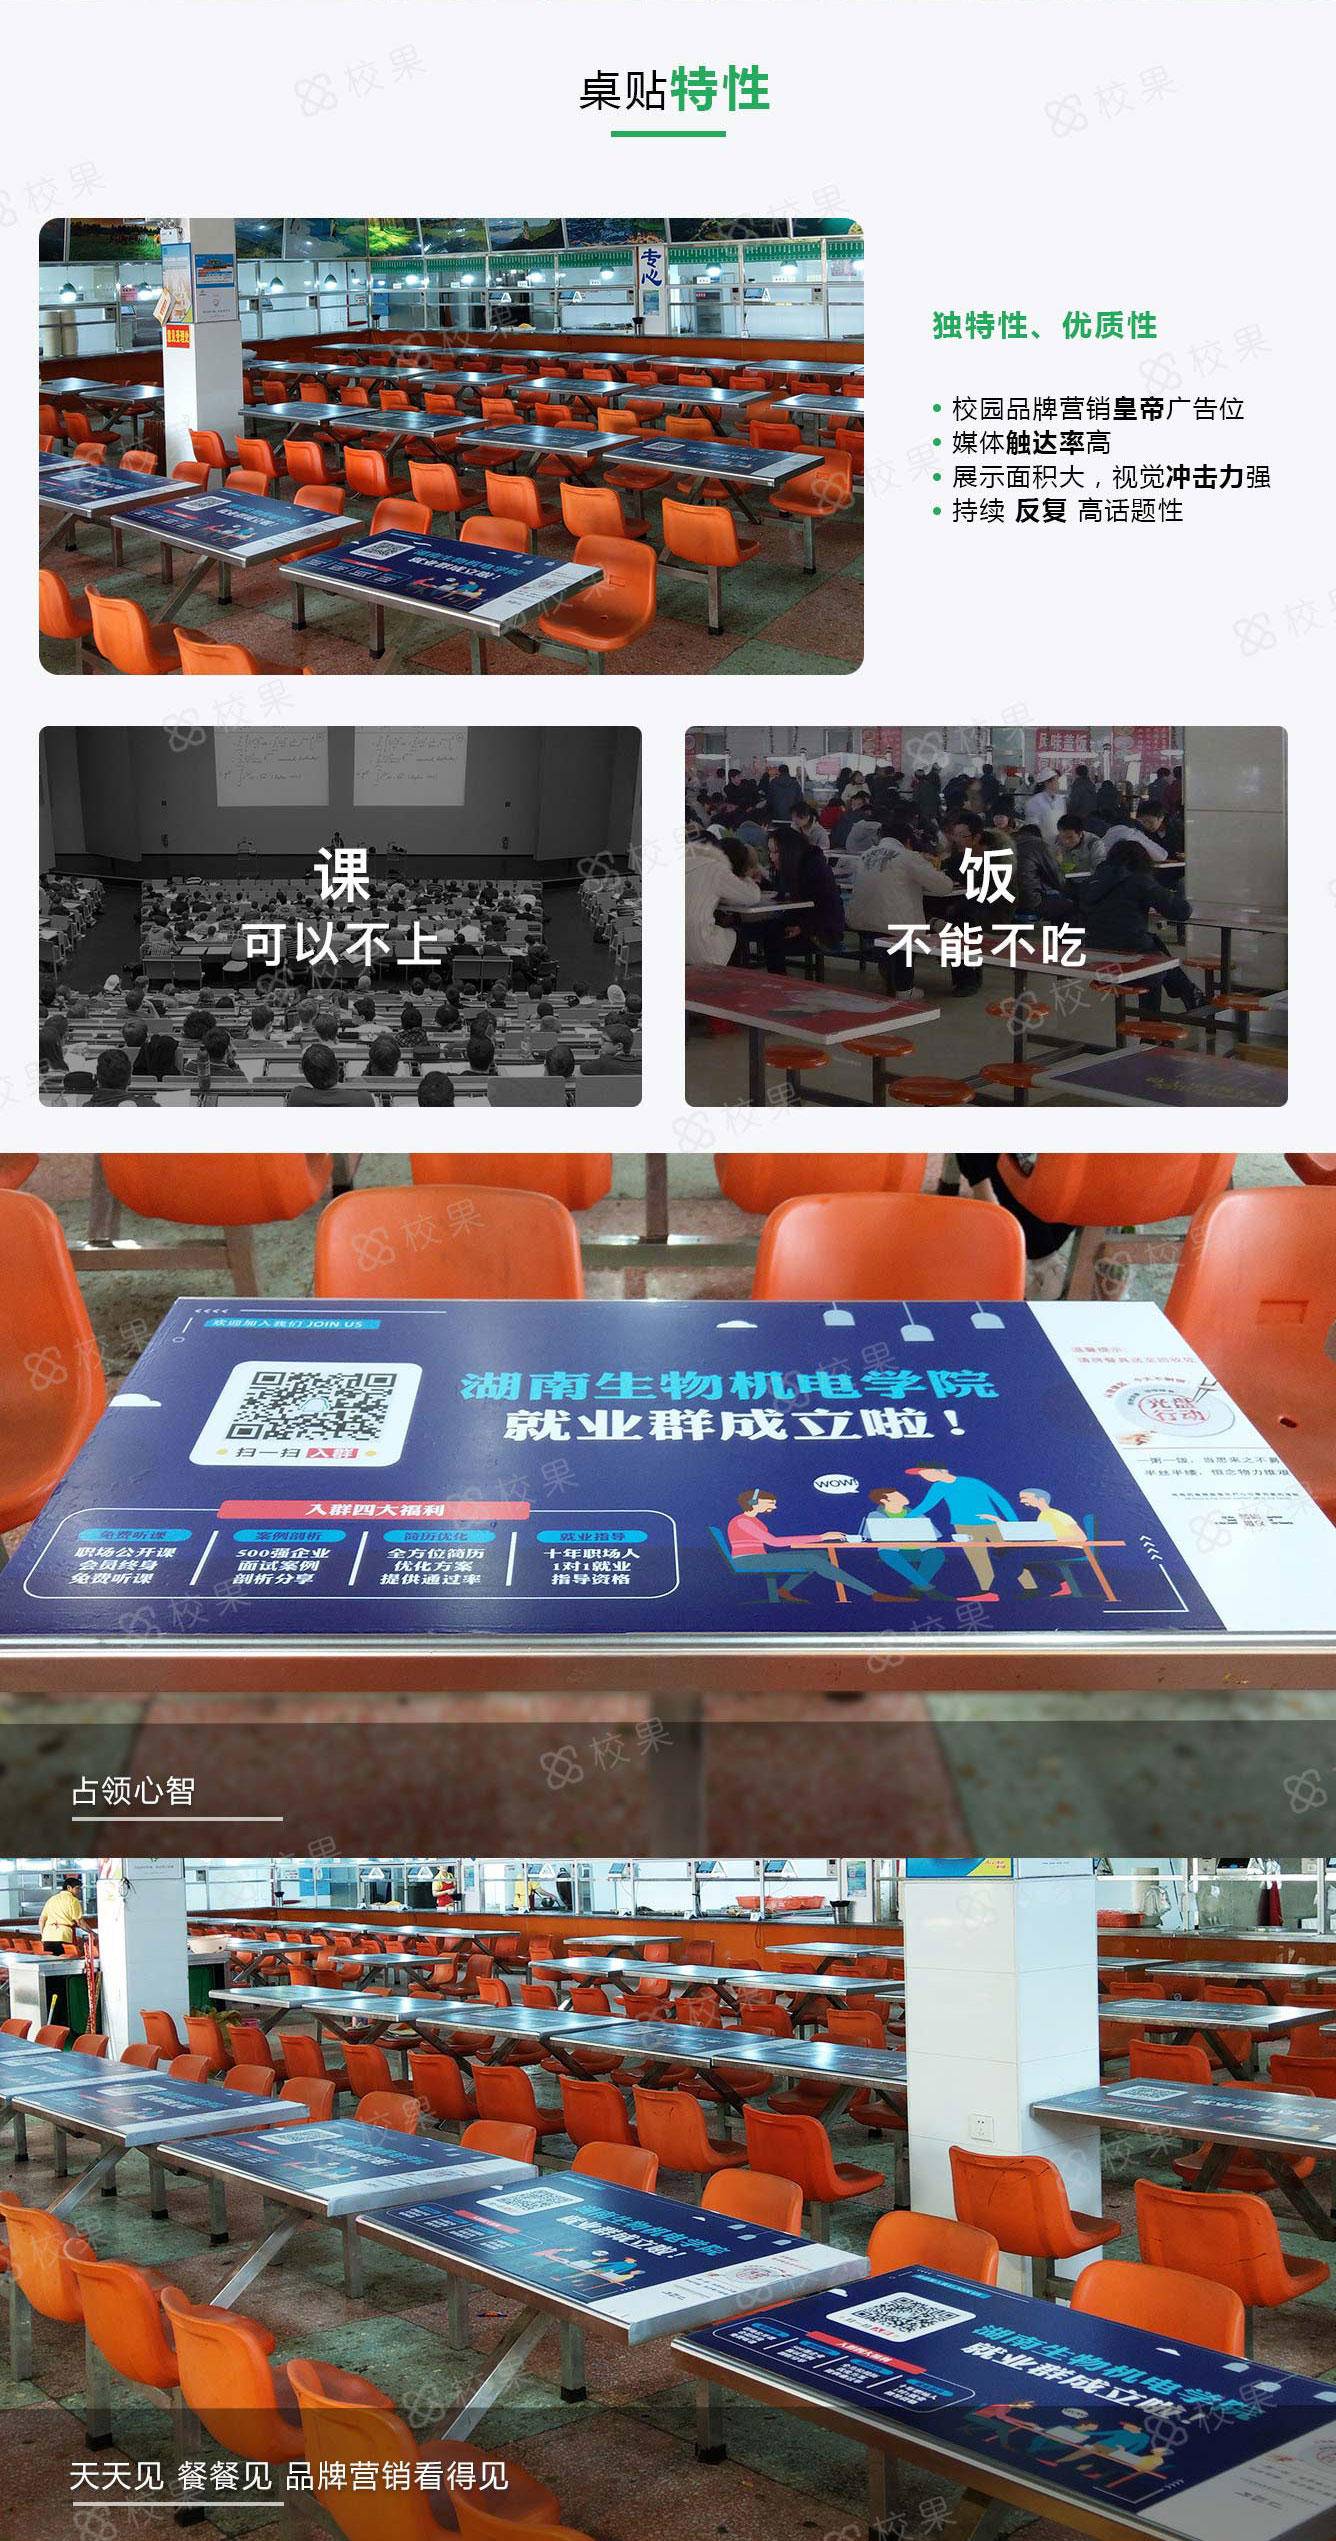 北京高校桌贴广告特征